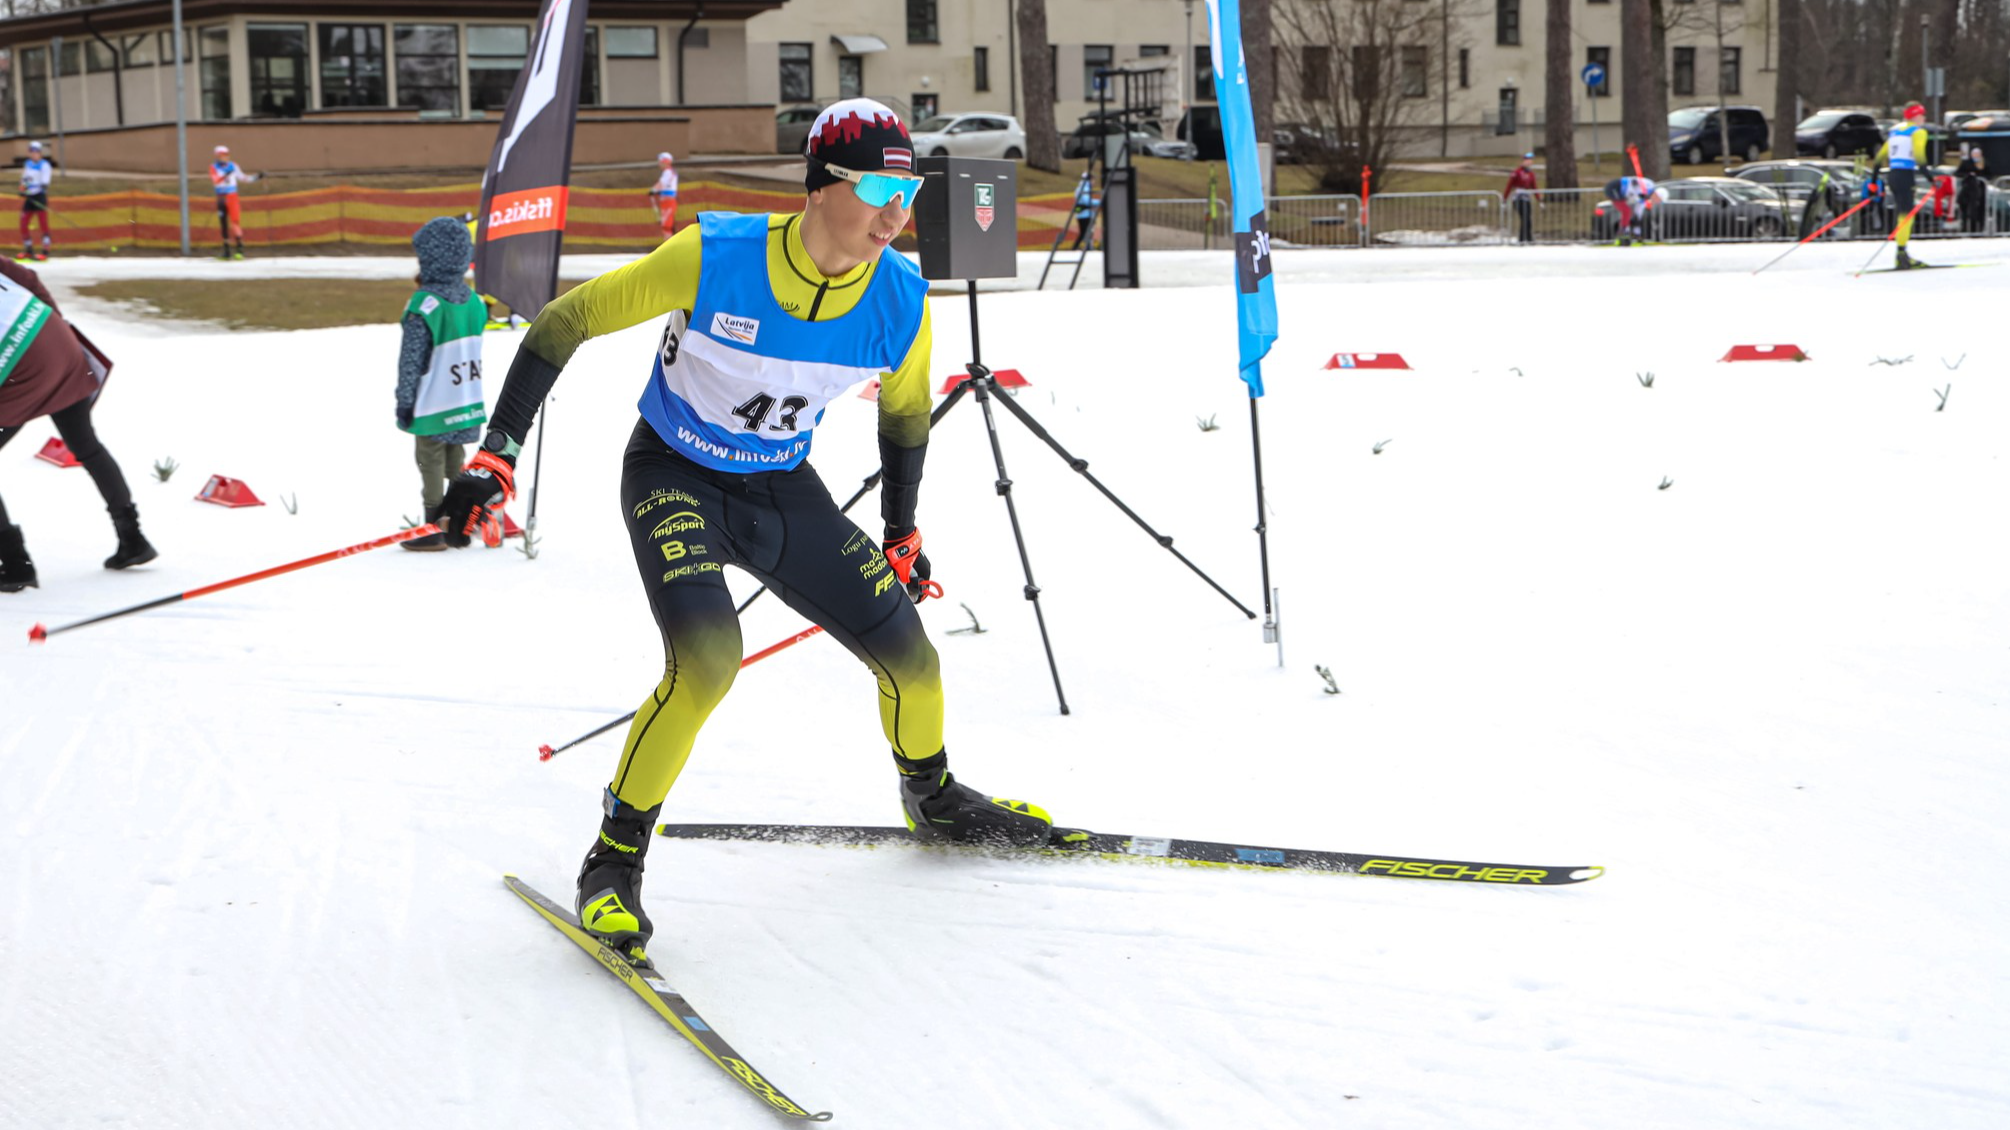 SS “Arkādija” jaunieši izcīnījuši divus zeltus un divus sudrabus sprintā Latvijas čempionātā slēpošanā 